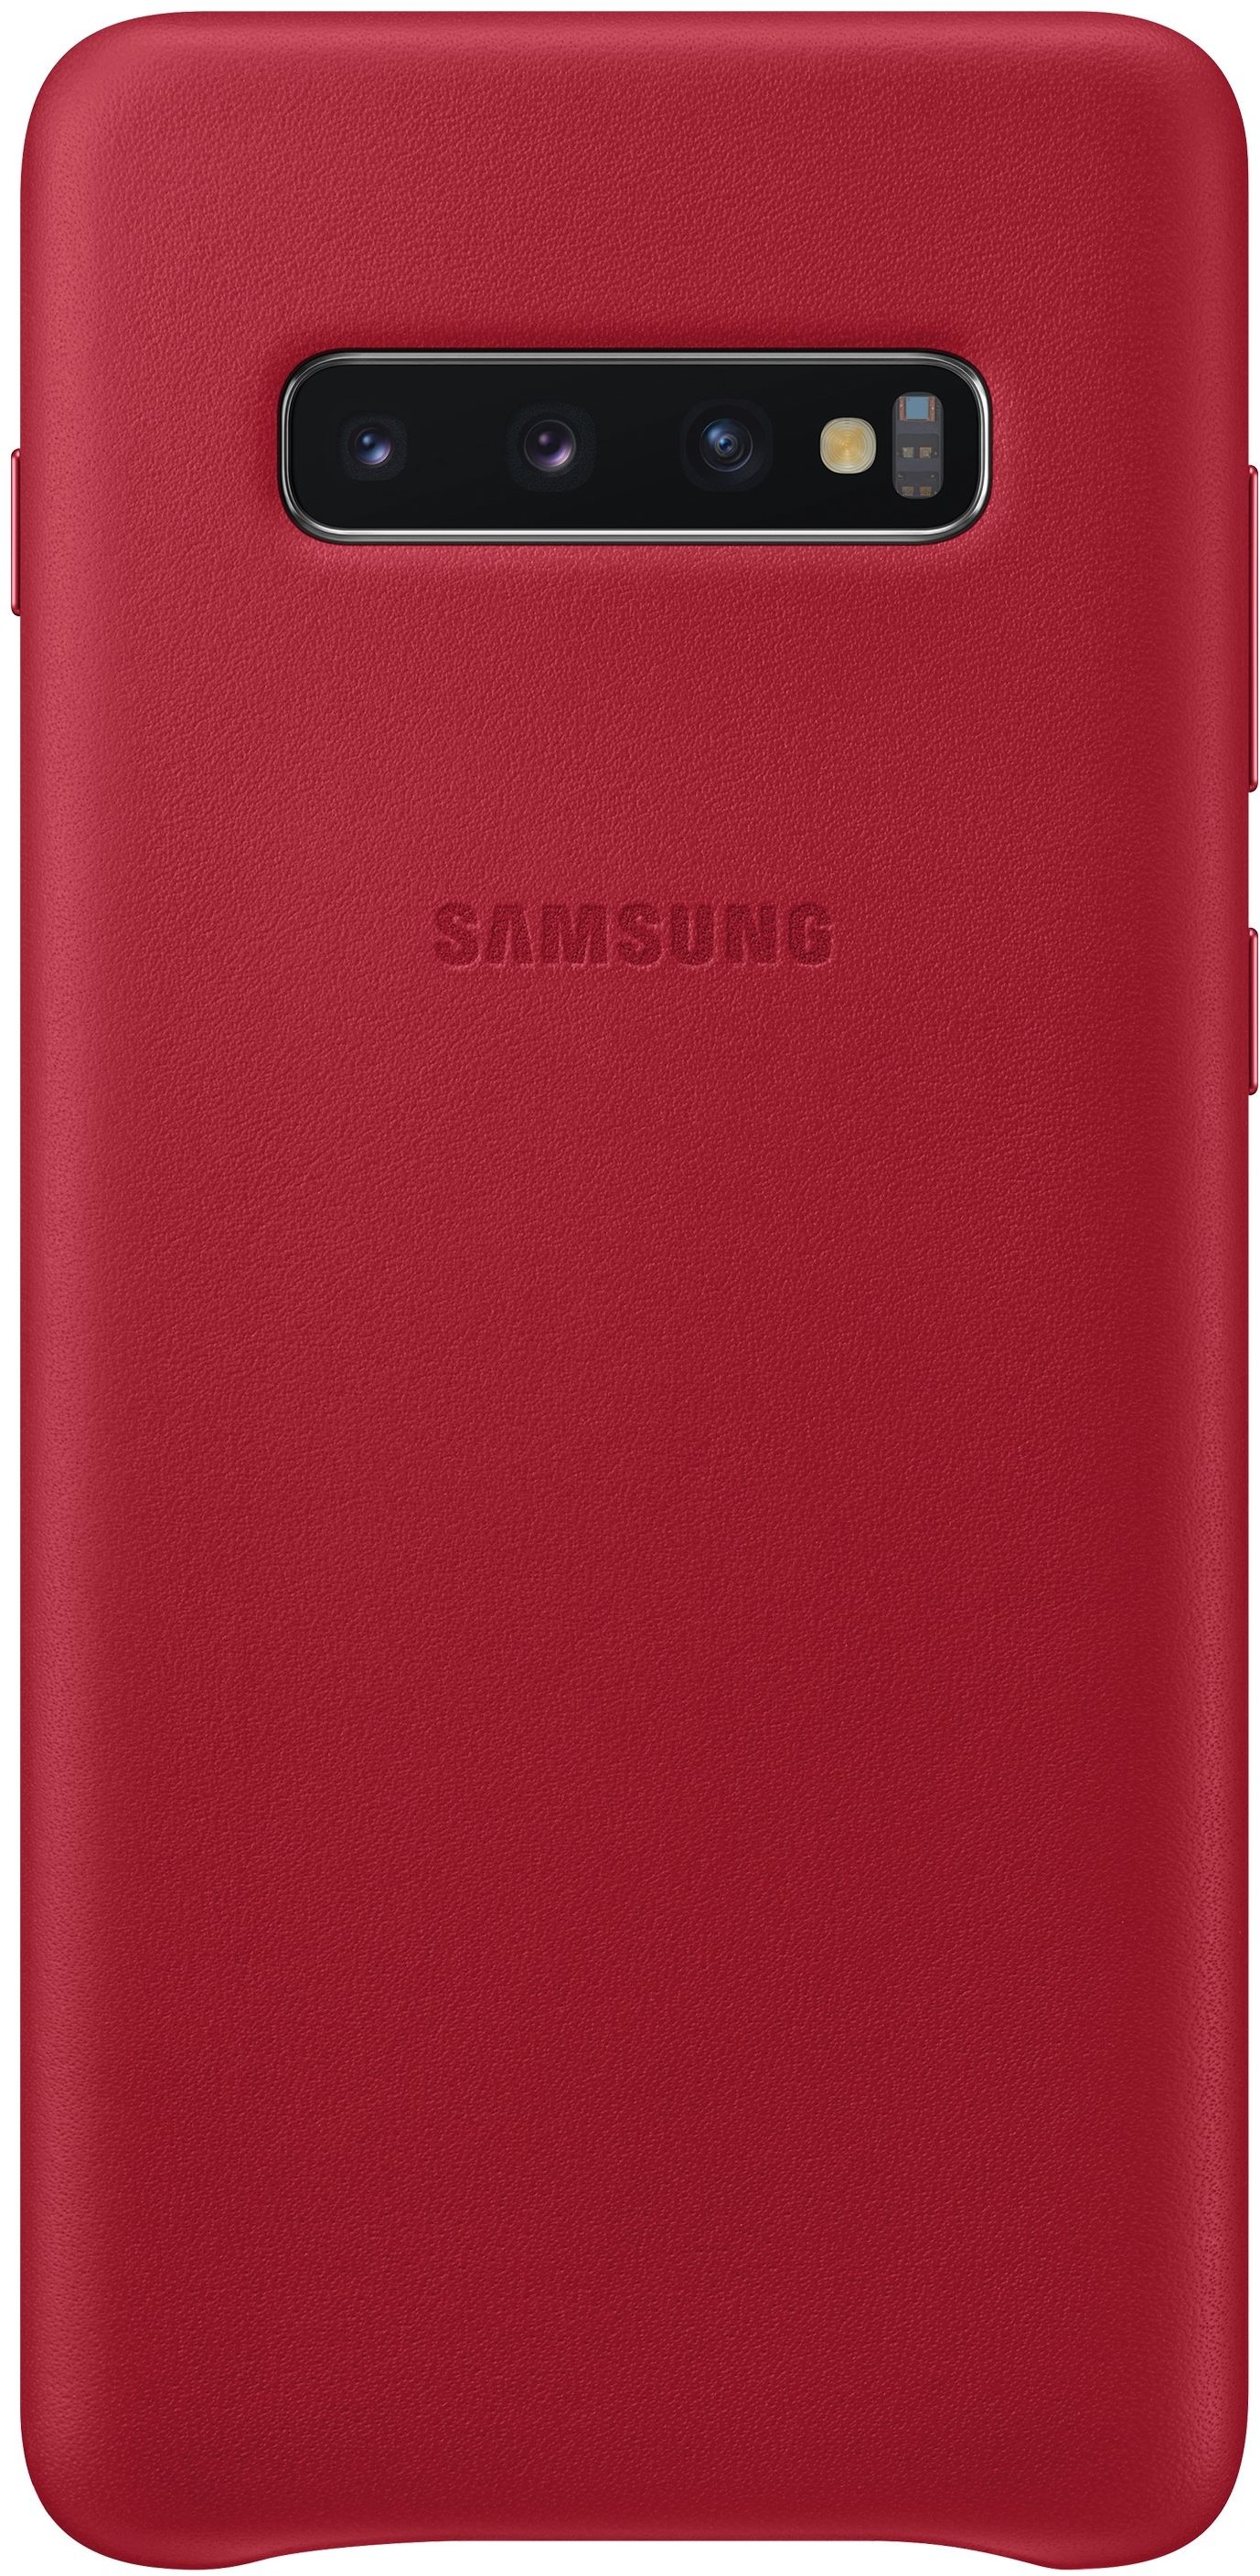 Samsung Etui Leather Cover do Galaxy S10+ Czerwony EF-VG975LREGWW